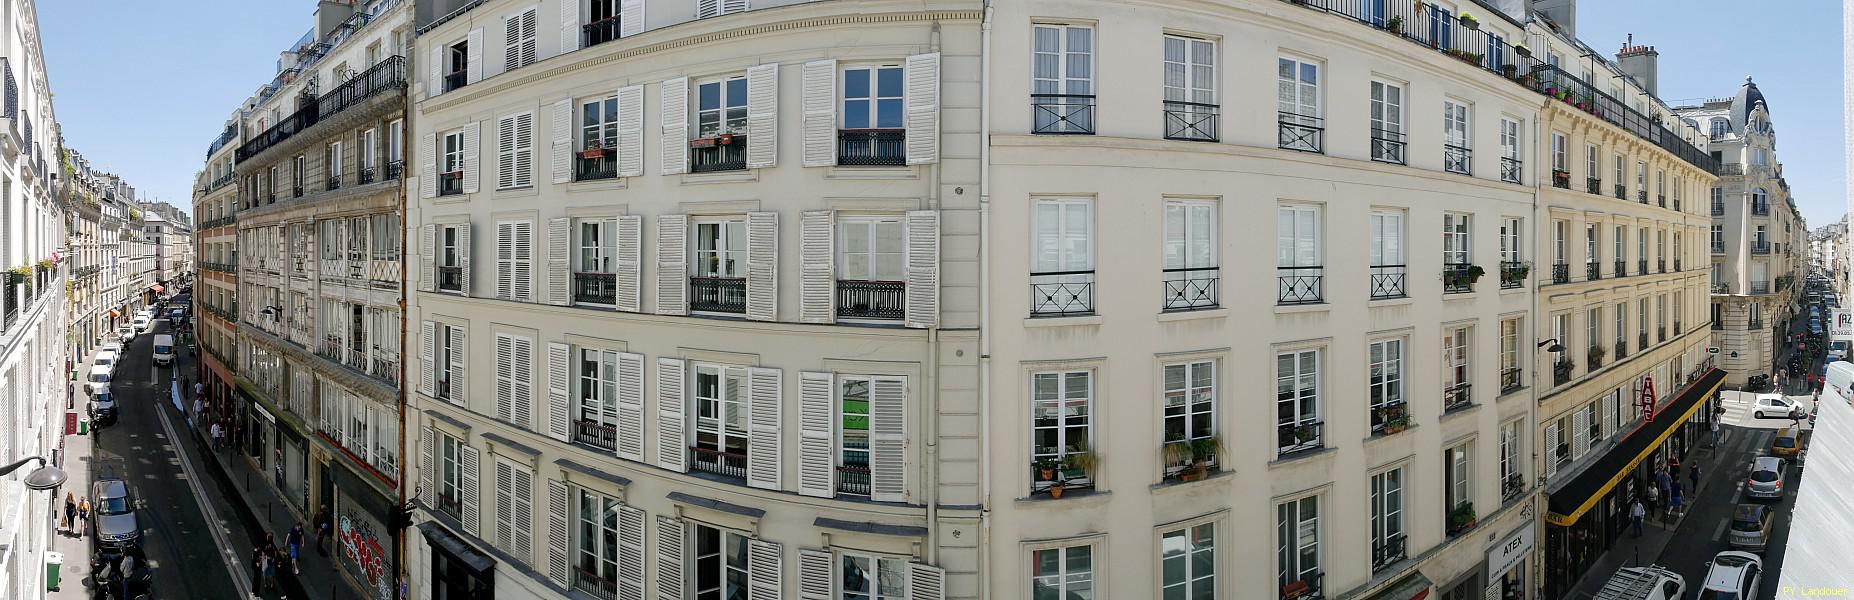 Paris vu d'en haut, 34 rue des Petites-curies